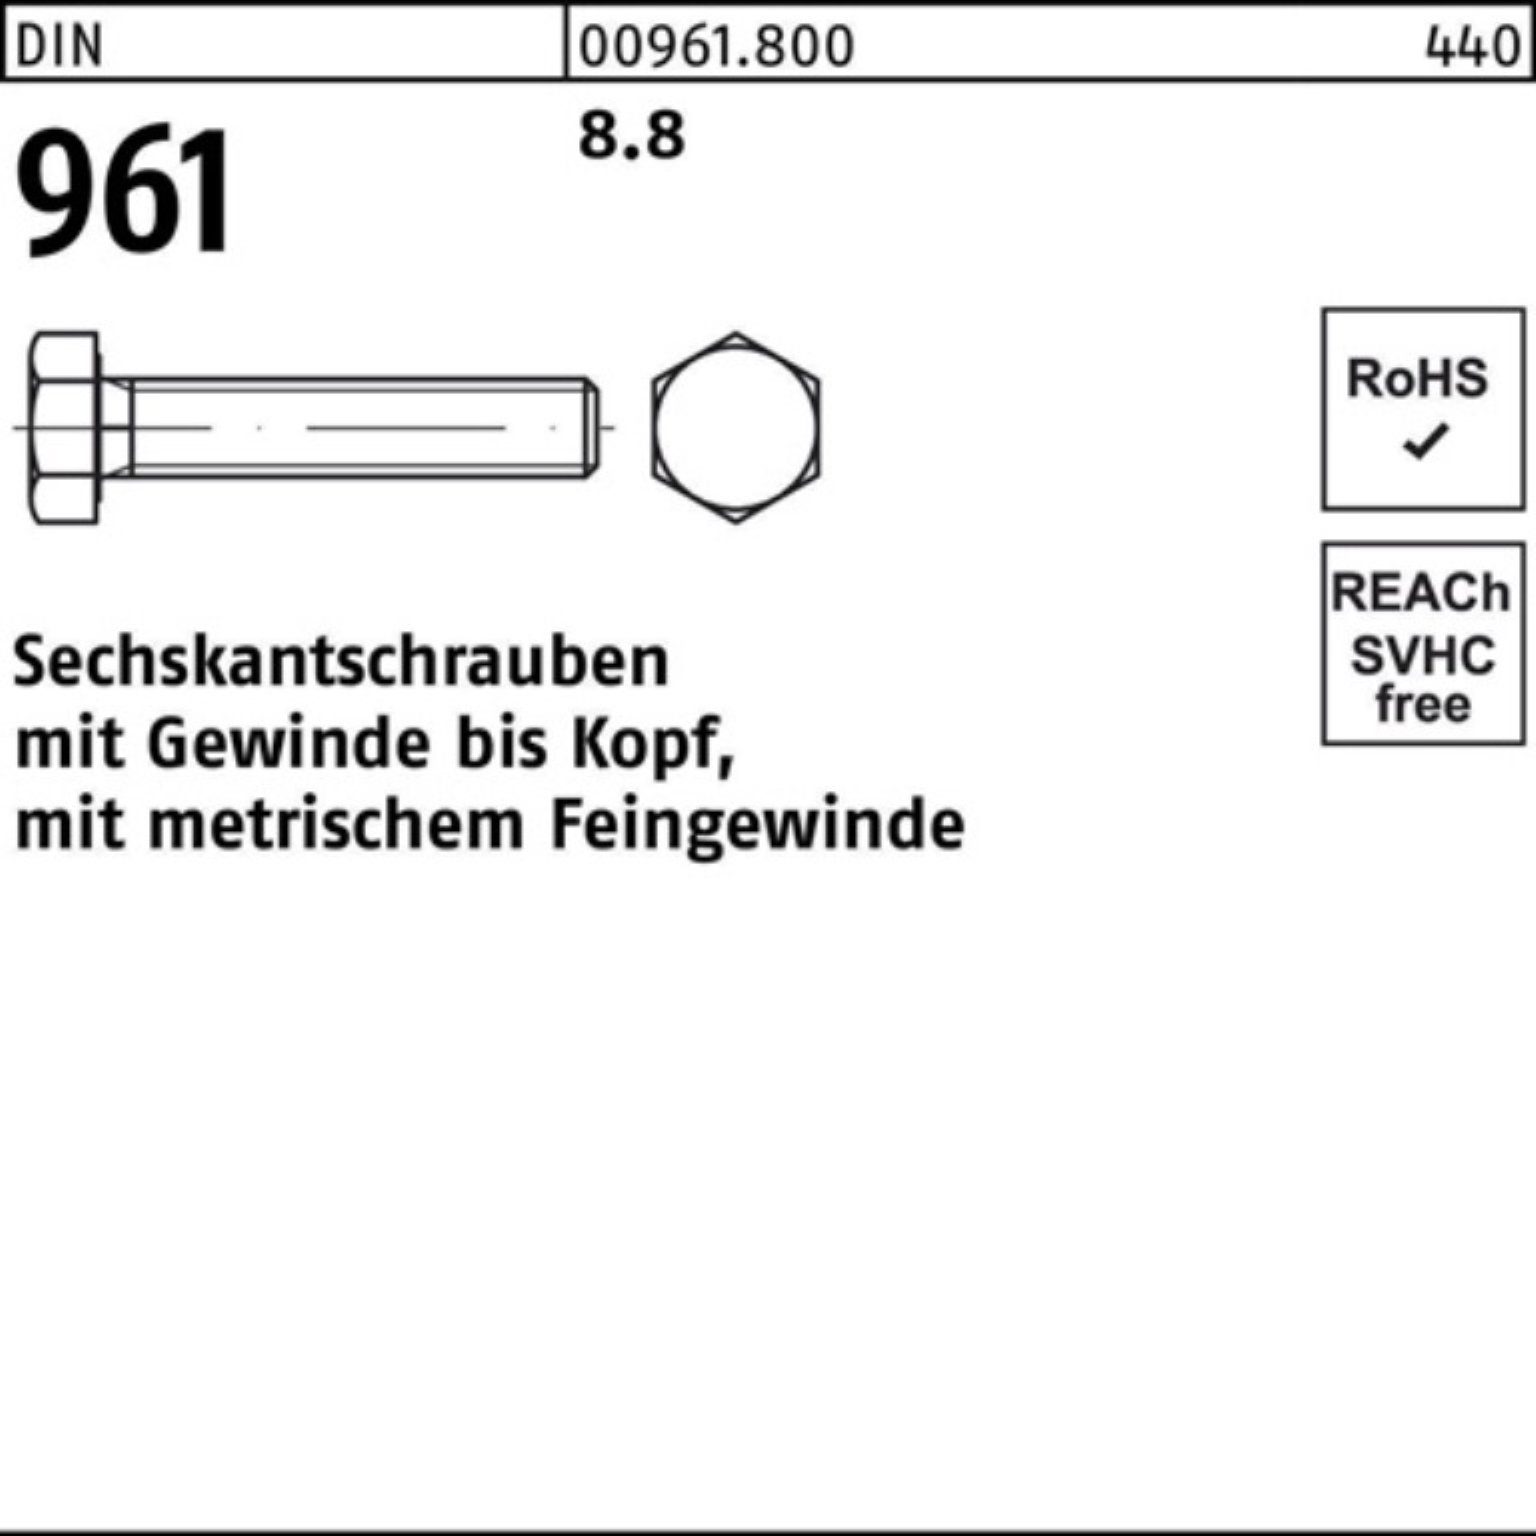 VG Sechskantschraube Sechskantschraube 65 8.8 100er Pack 961 Stück 25 Reyher M18x1,5x DIN DIN